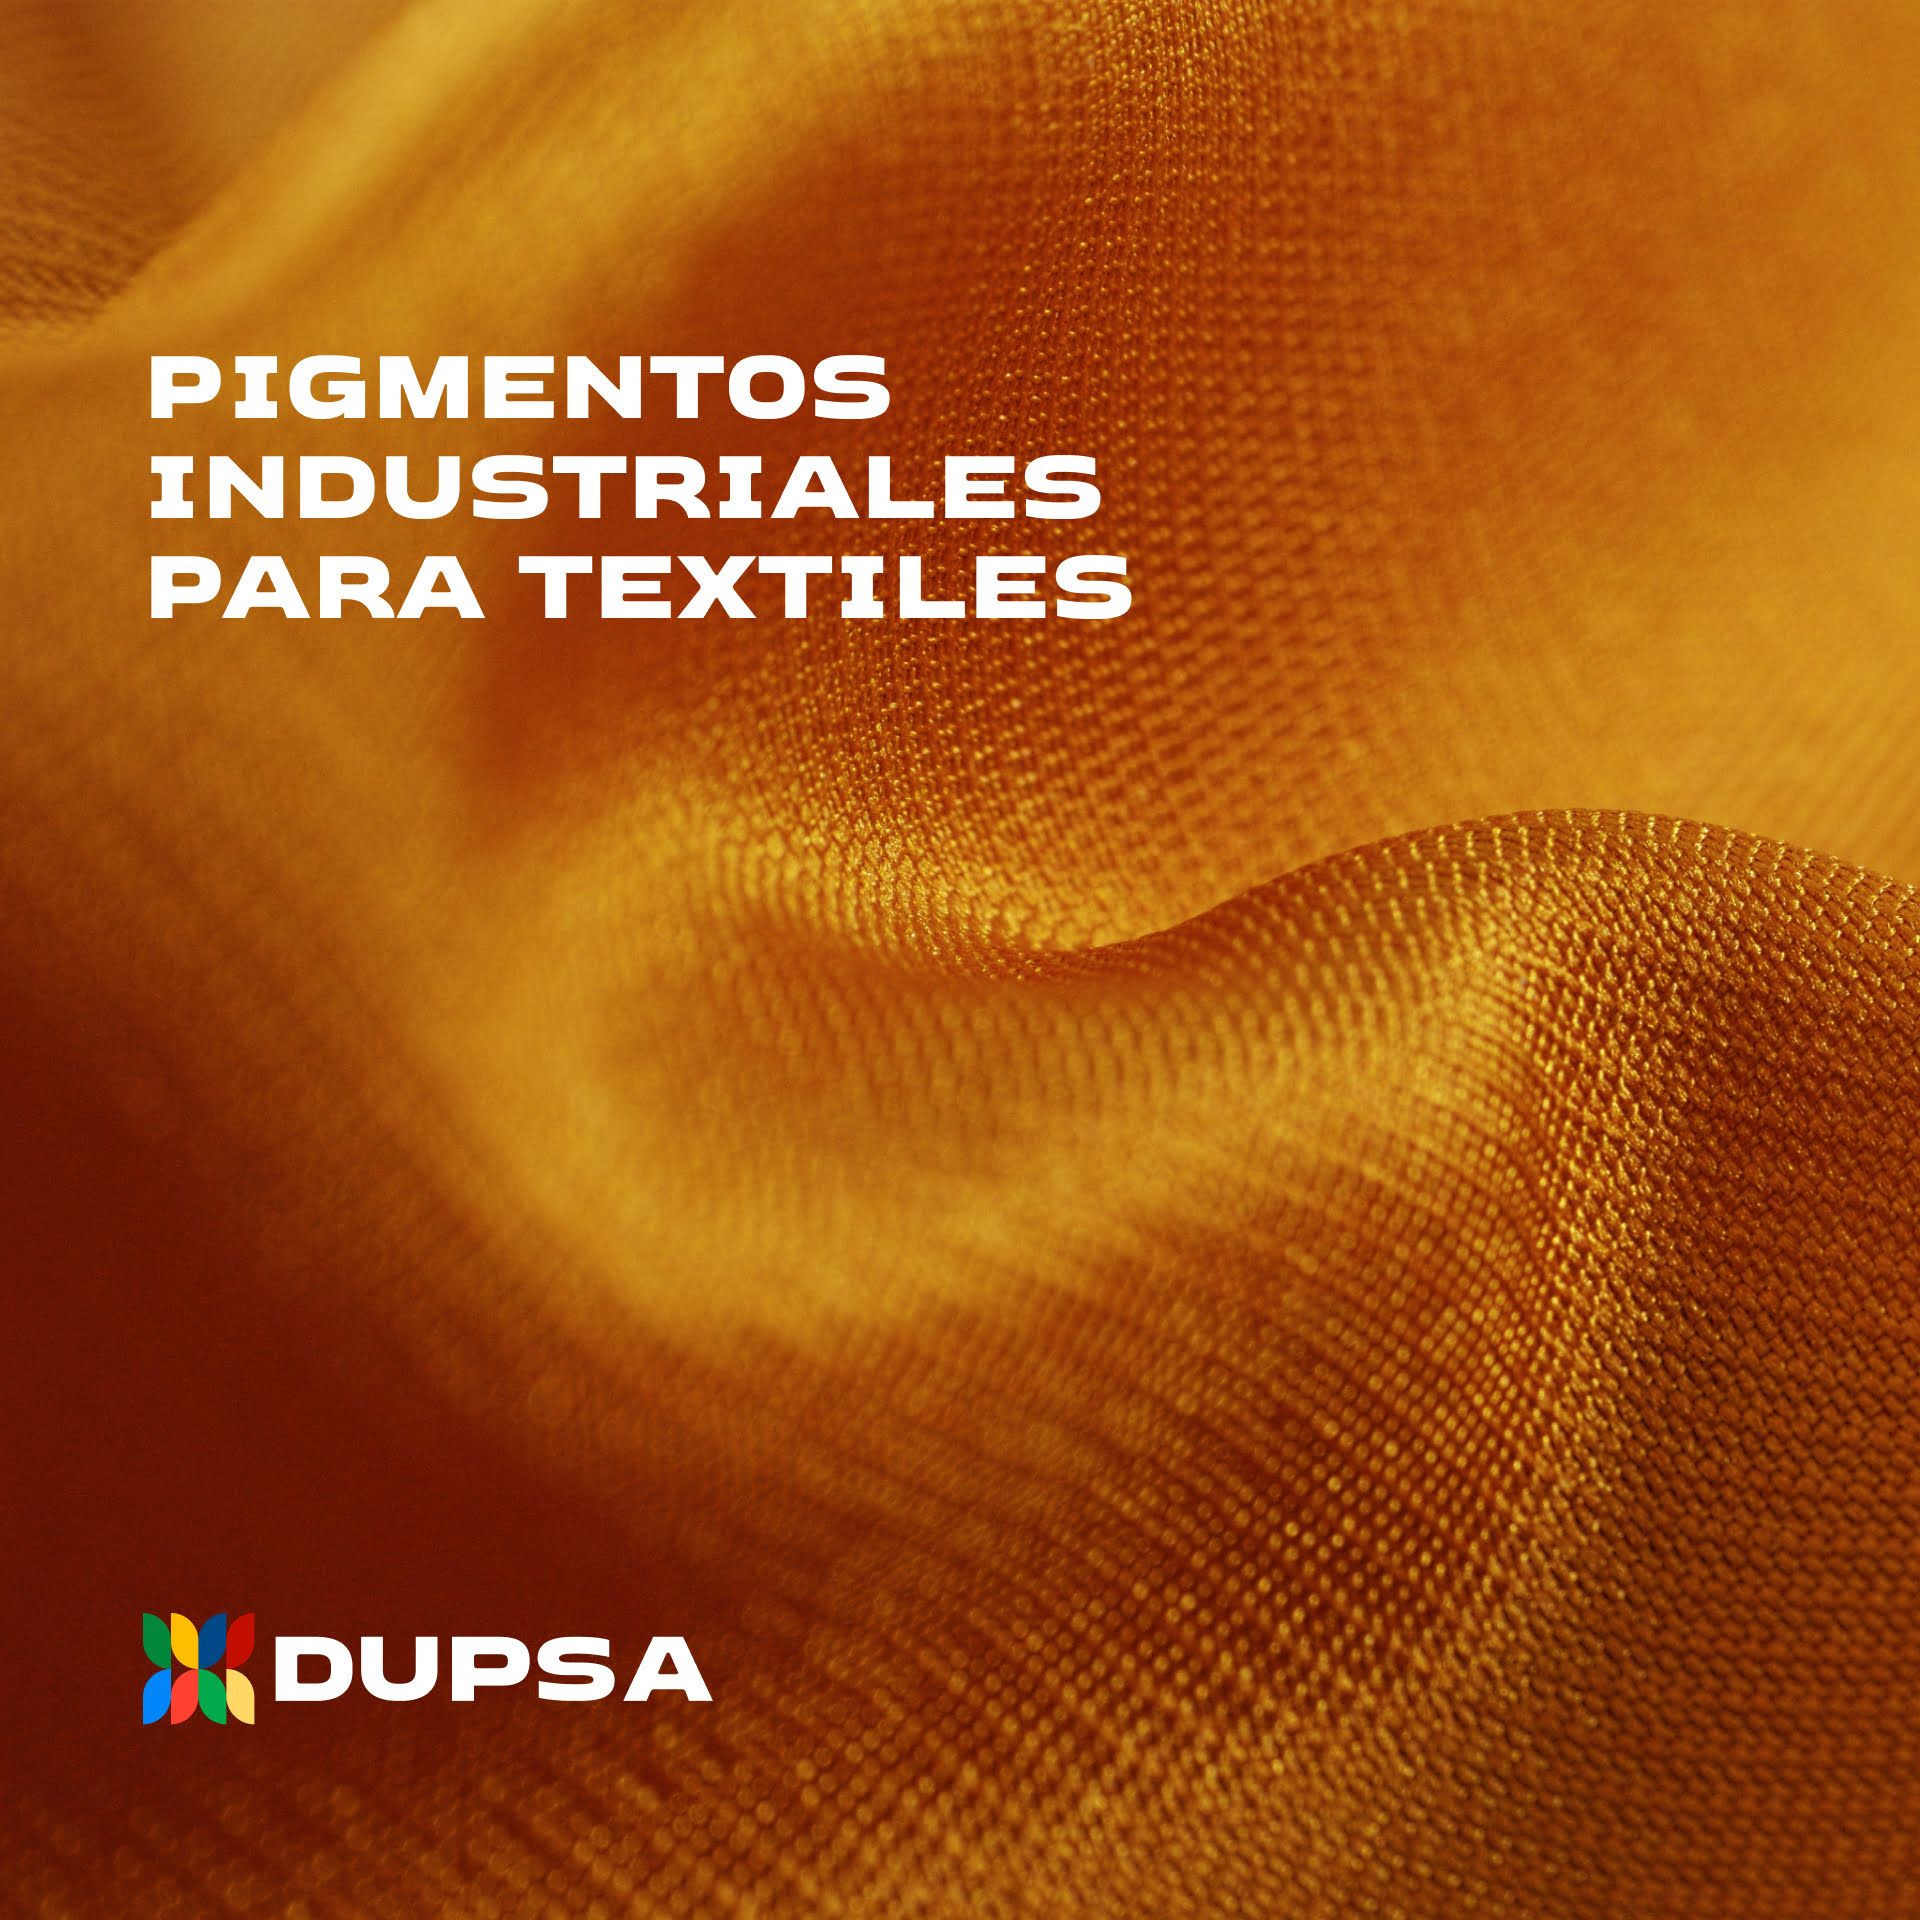 qd-ad-pigmentos-textiles 4